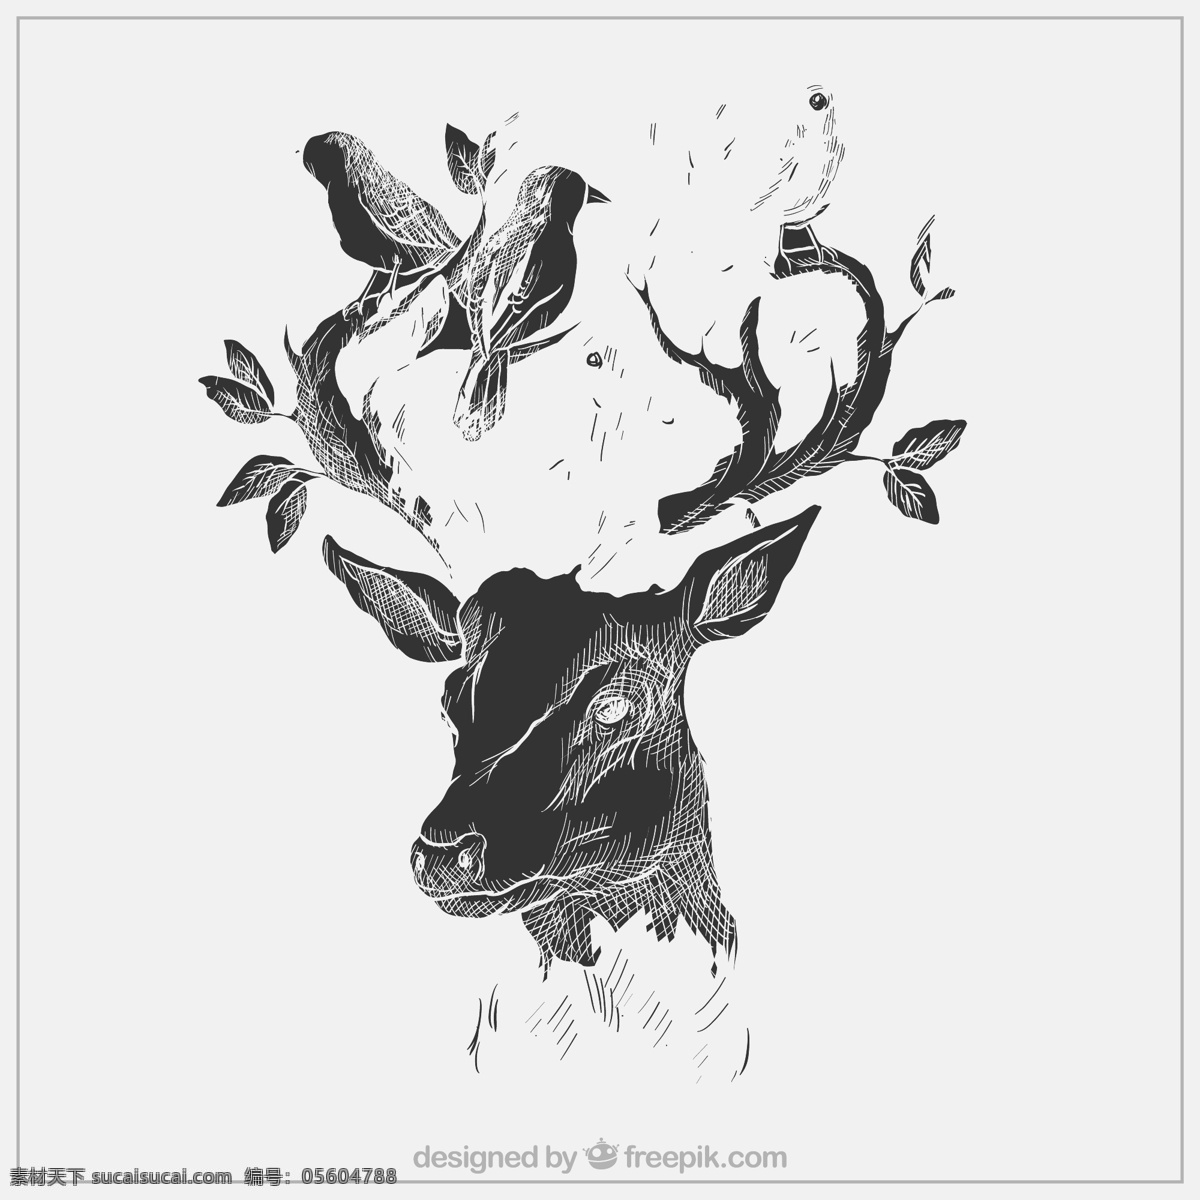 麋鹿图片 小鹿 鹿 卡通 森林动物 麋鹿 ai矢量图 装饰插画 印刷背景图 设计素材 矢量图